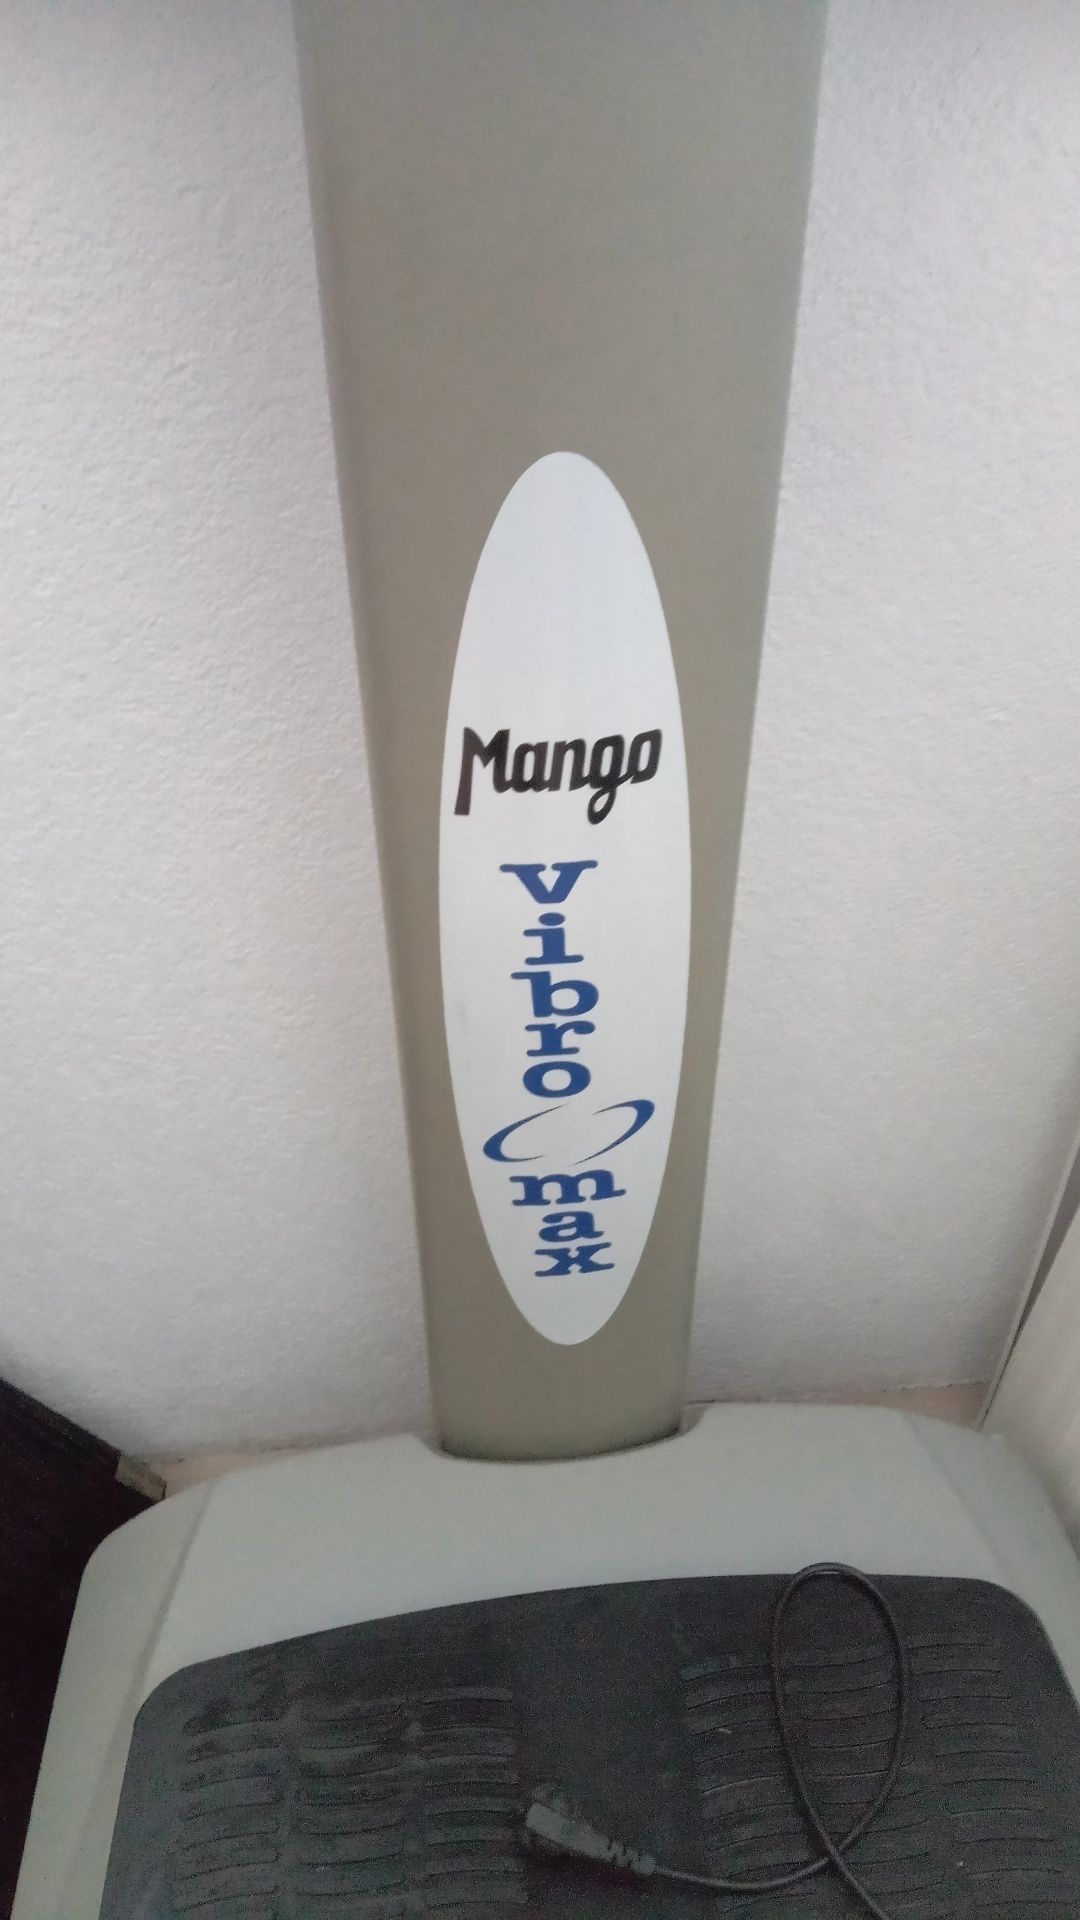 Platforma wibracyjna Mango Max odchudzająca.499zł.